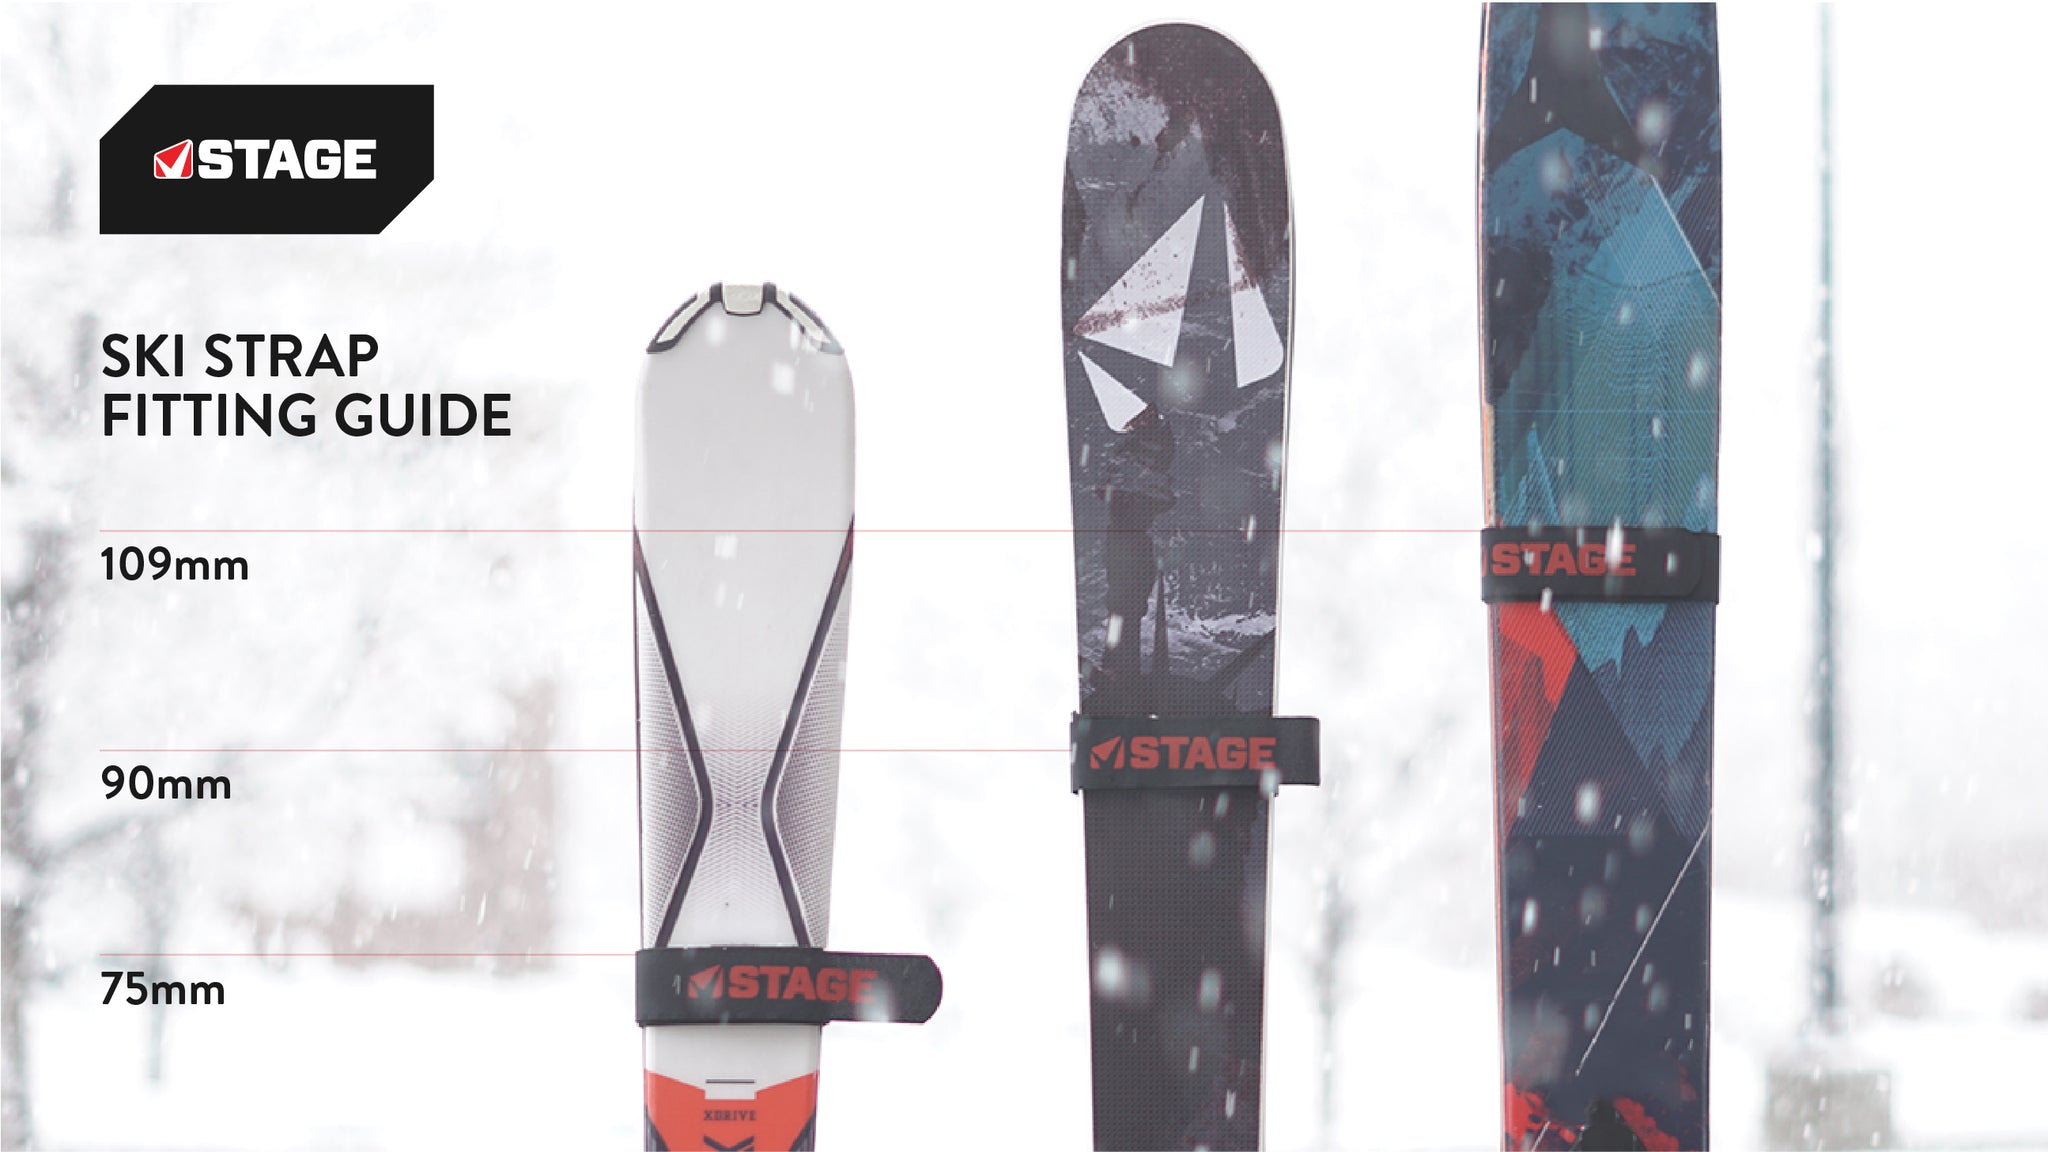 Ski Straps - Pair - Fits Narrow and Powder Skis